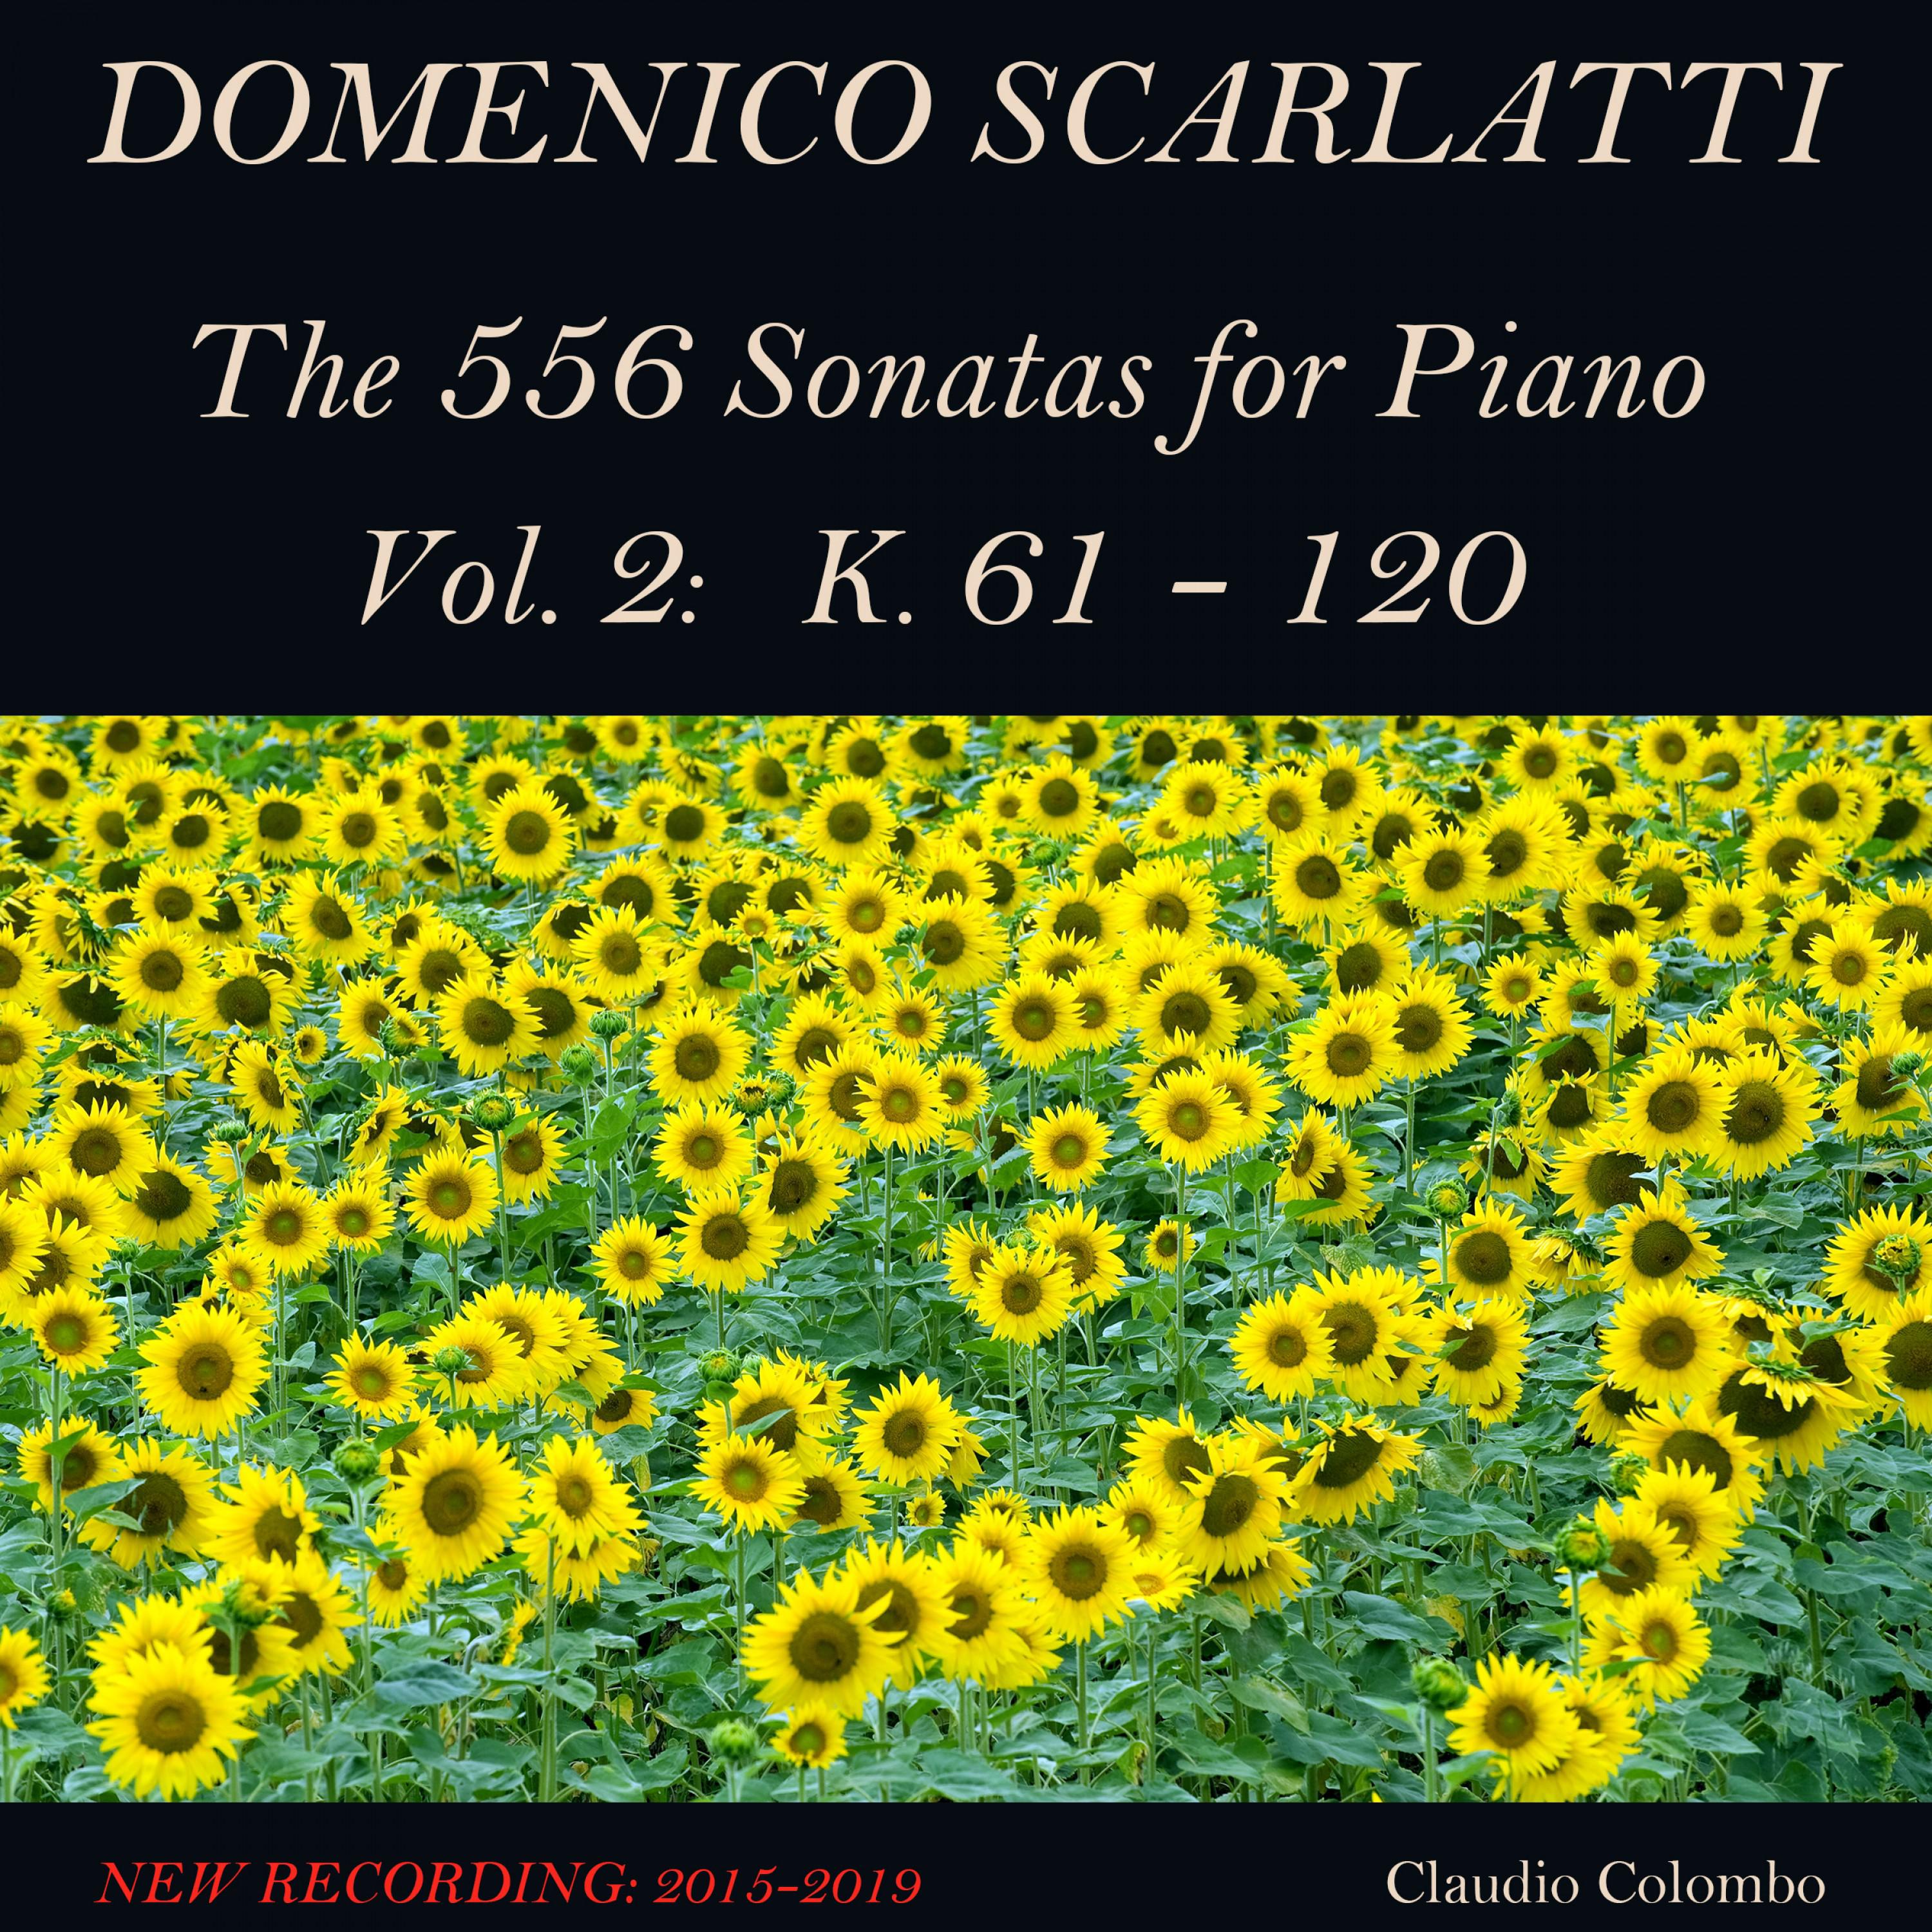 Piano Sonata in A Minor, K. 61